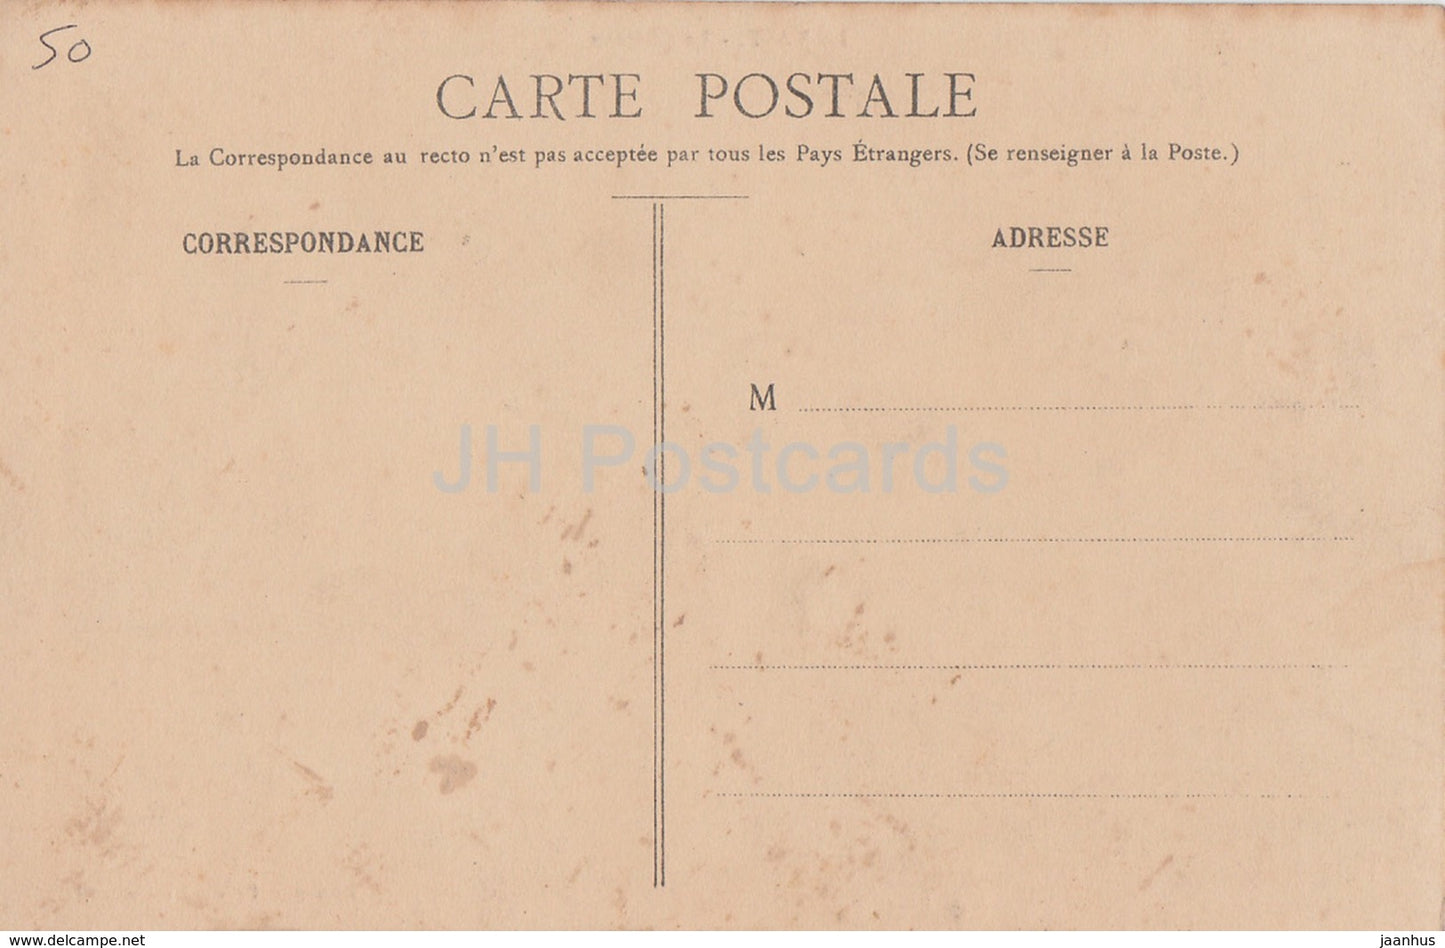 Le Vast - Le Chateau - castle - old postcard - France - unused